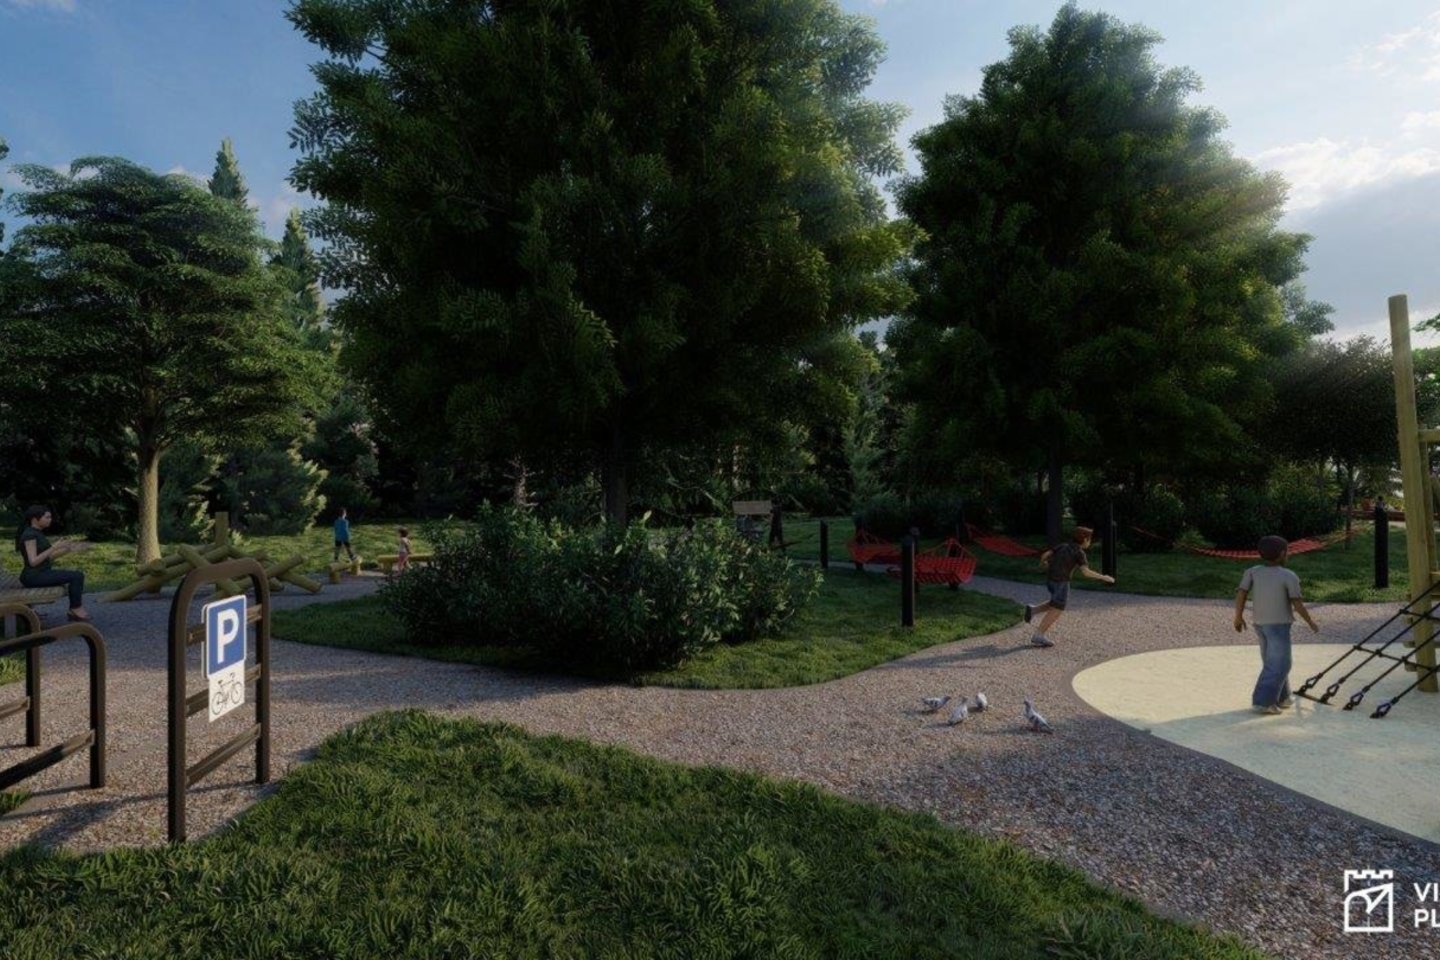 Karoliniškėse formuojamame parke Vilniaus miesto architektai siūlo naujus sprendimus – atvirą erdvę laisvalaikiui bei ugdymui.<br>SĮ „Vilniaus plano“ vizual.